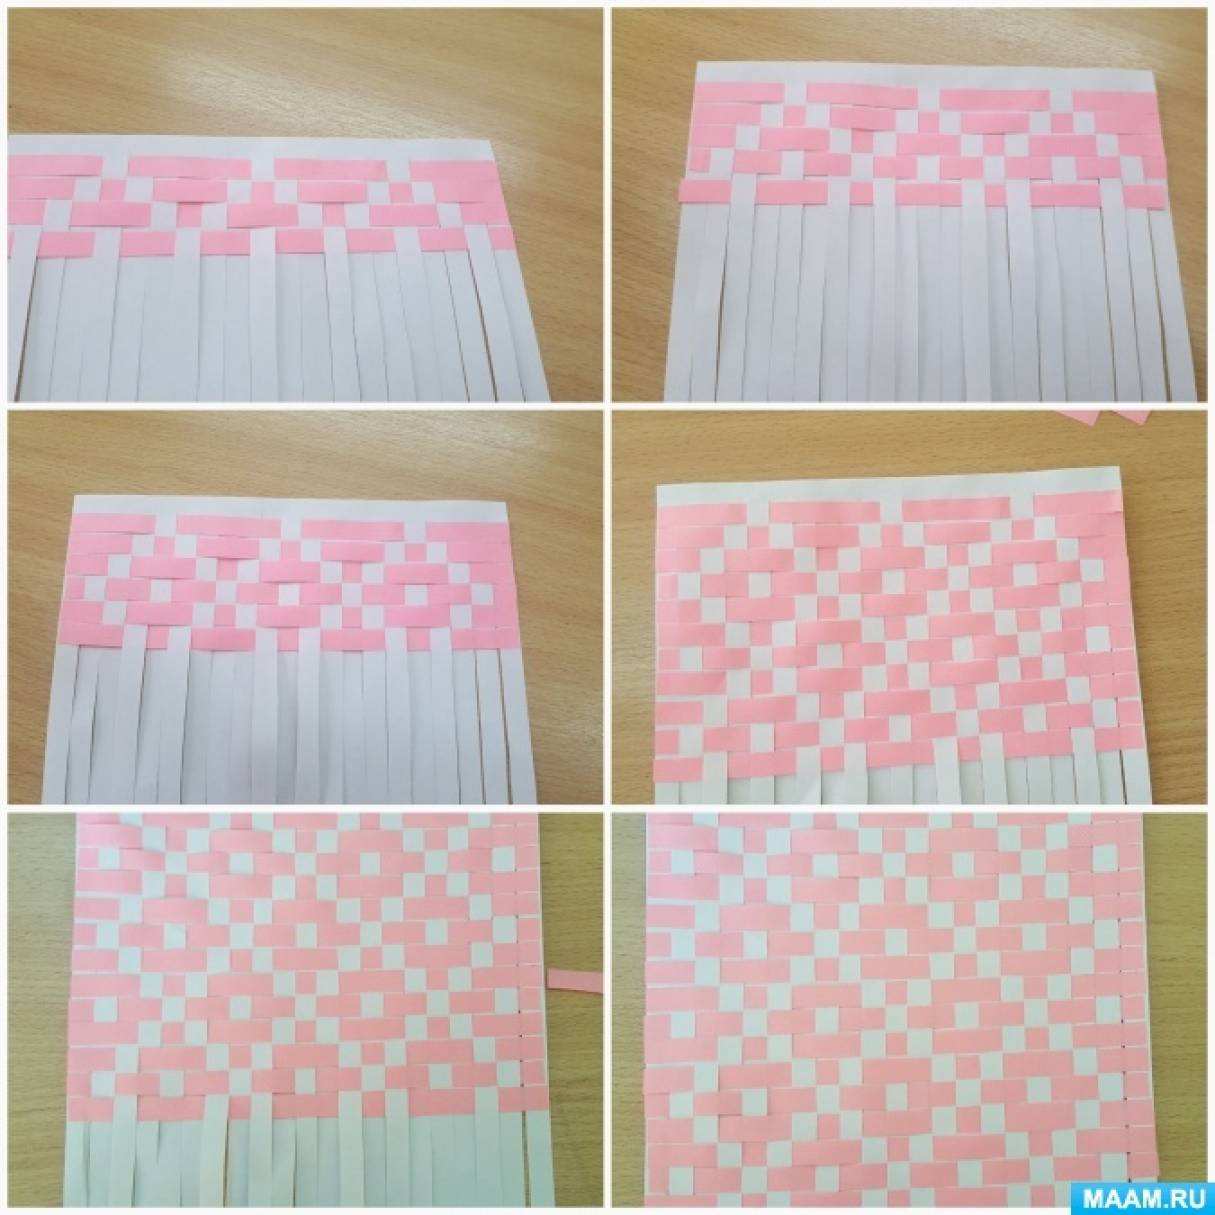 Узорный плетеный коврик из бумаги - презентация онлайн